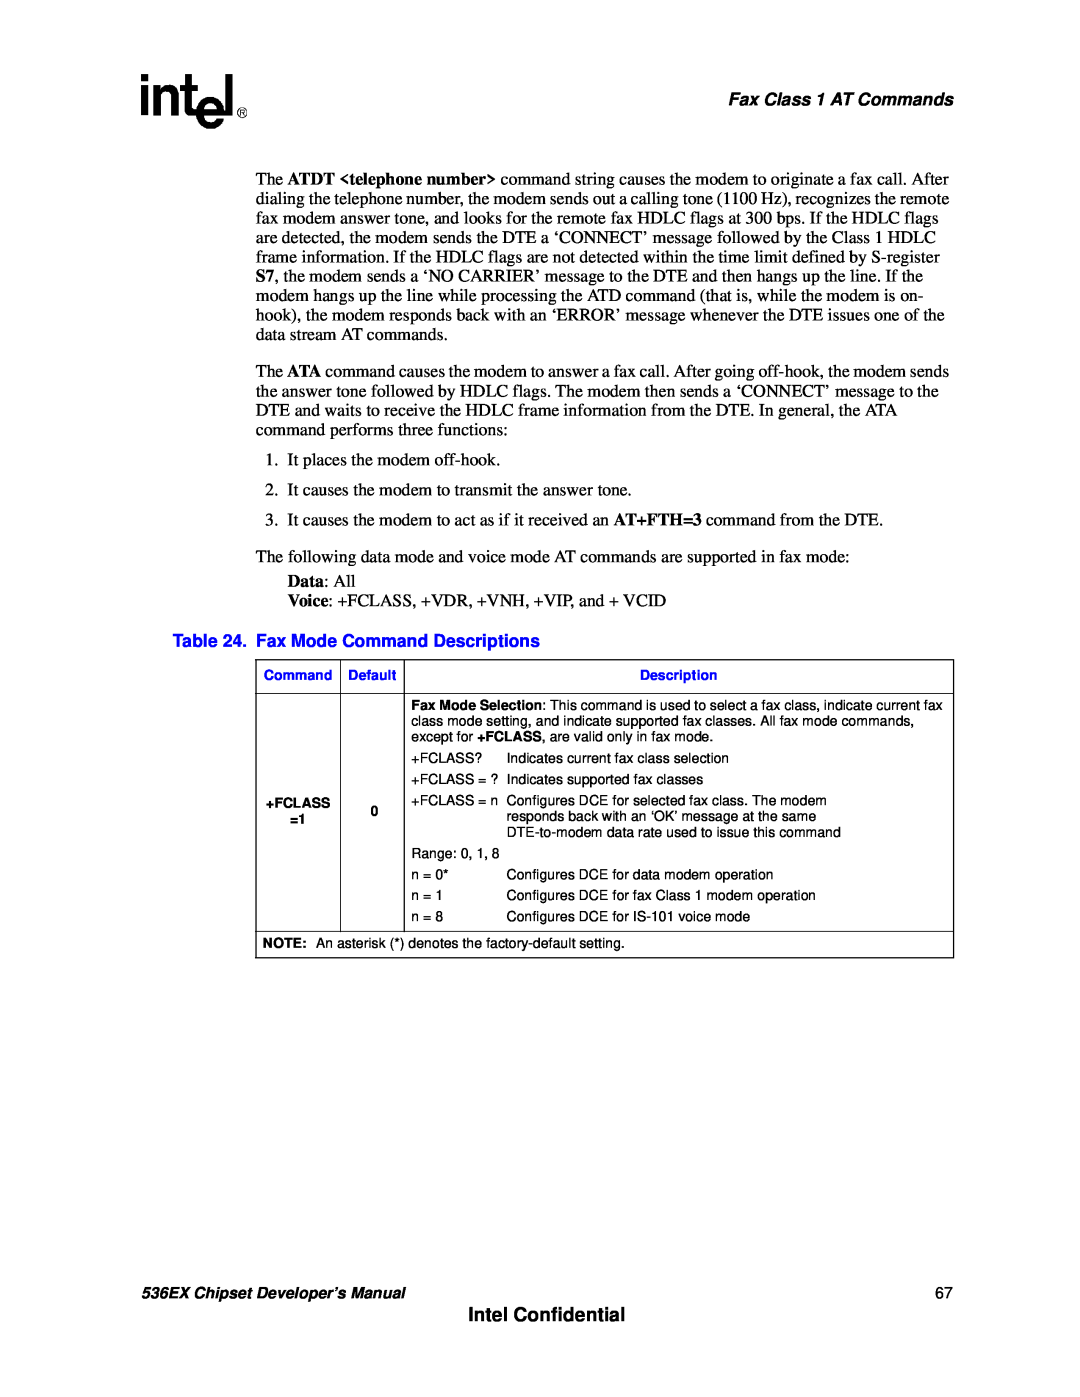 Intel 536EX manual Intel Confidential, Fax Class 1 AT Commands, Fax Mode Command Descriptions 